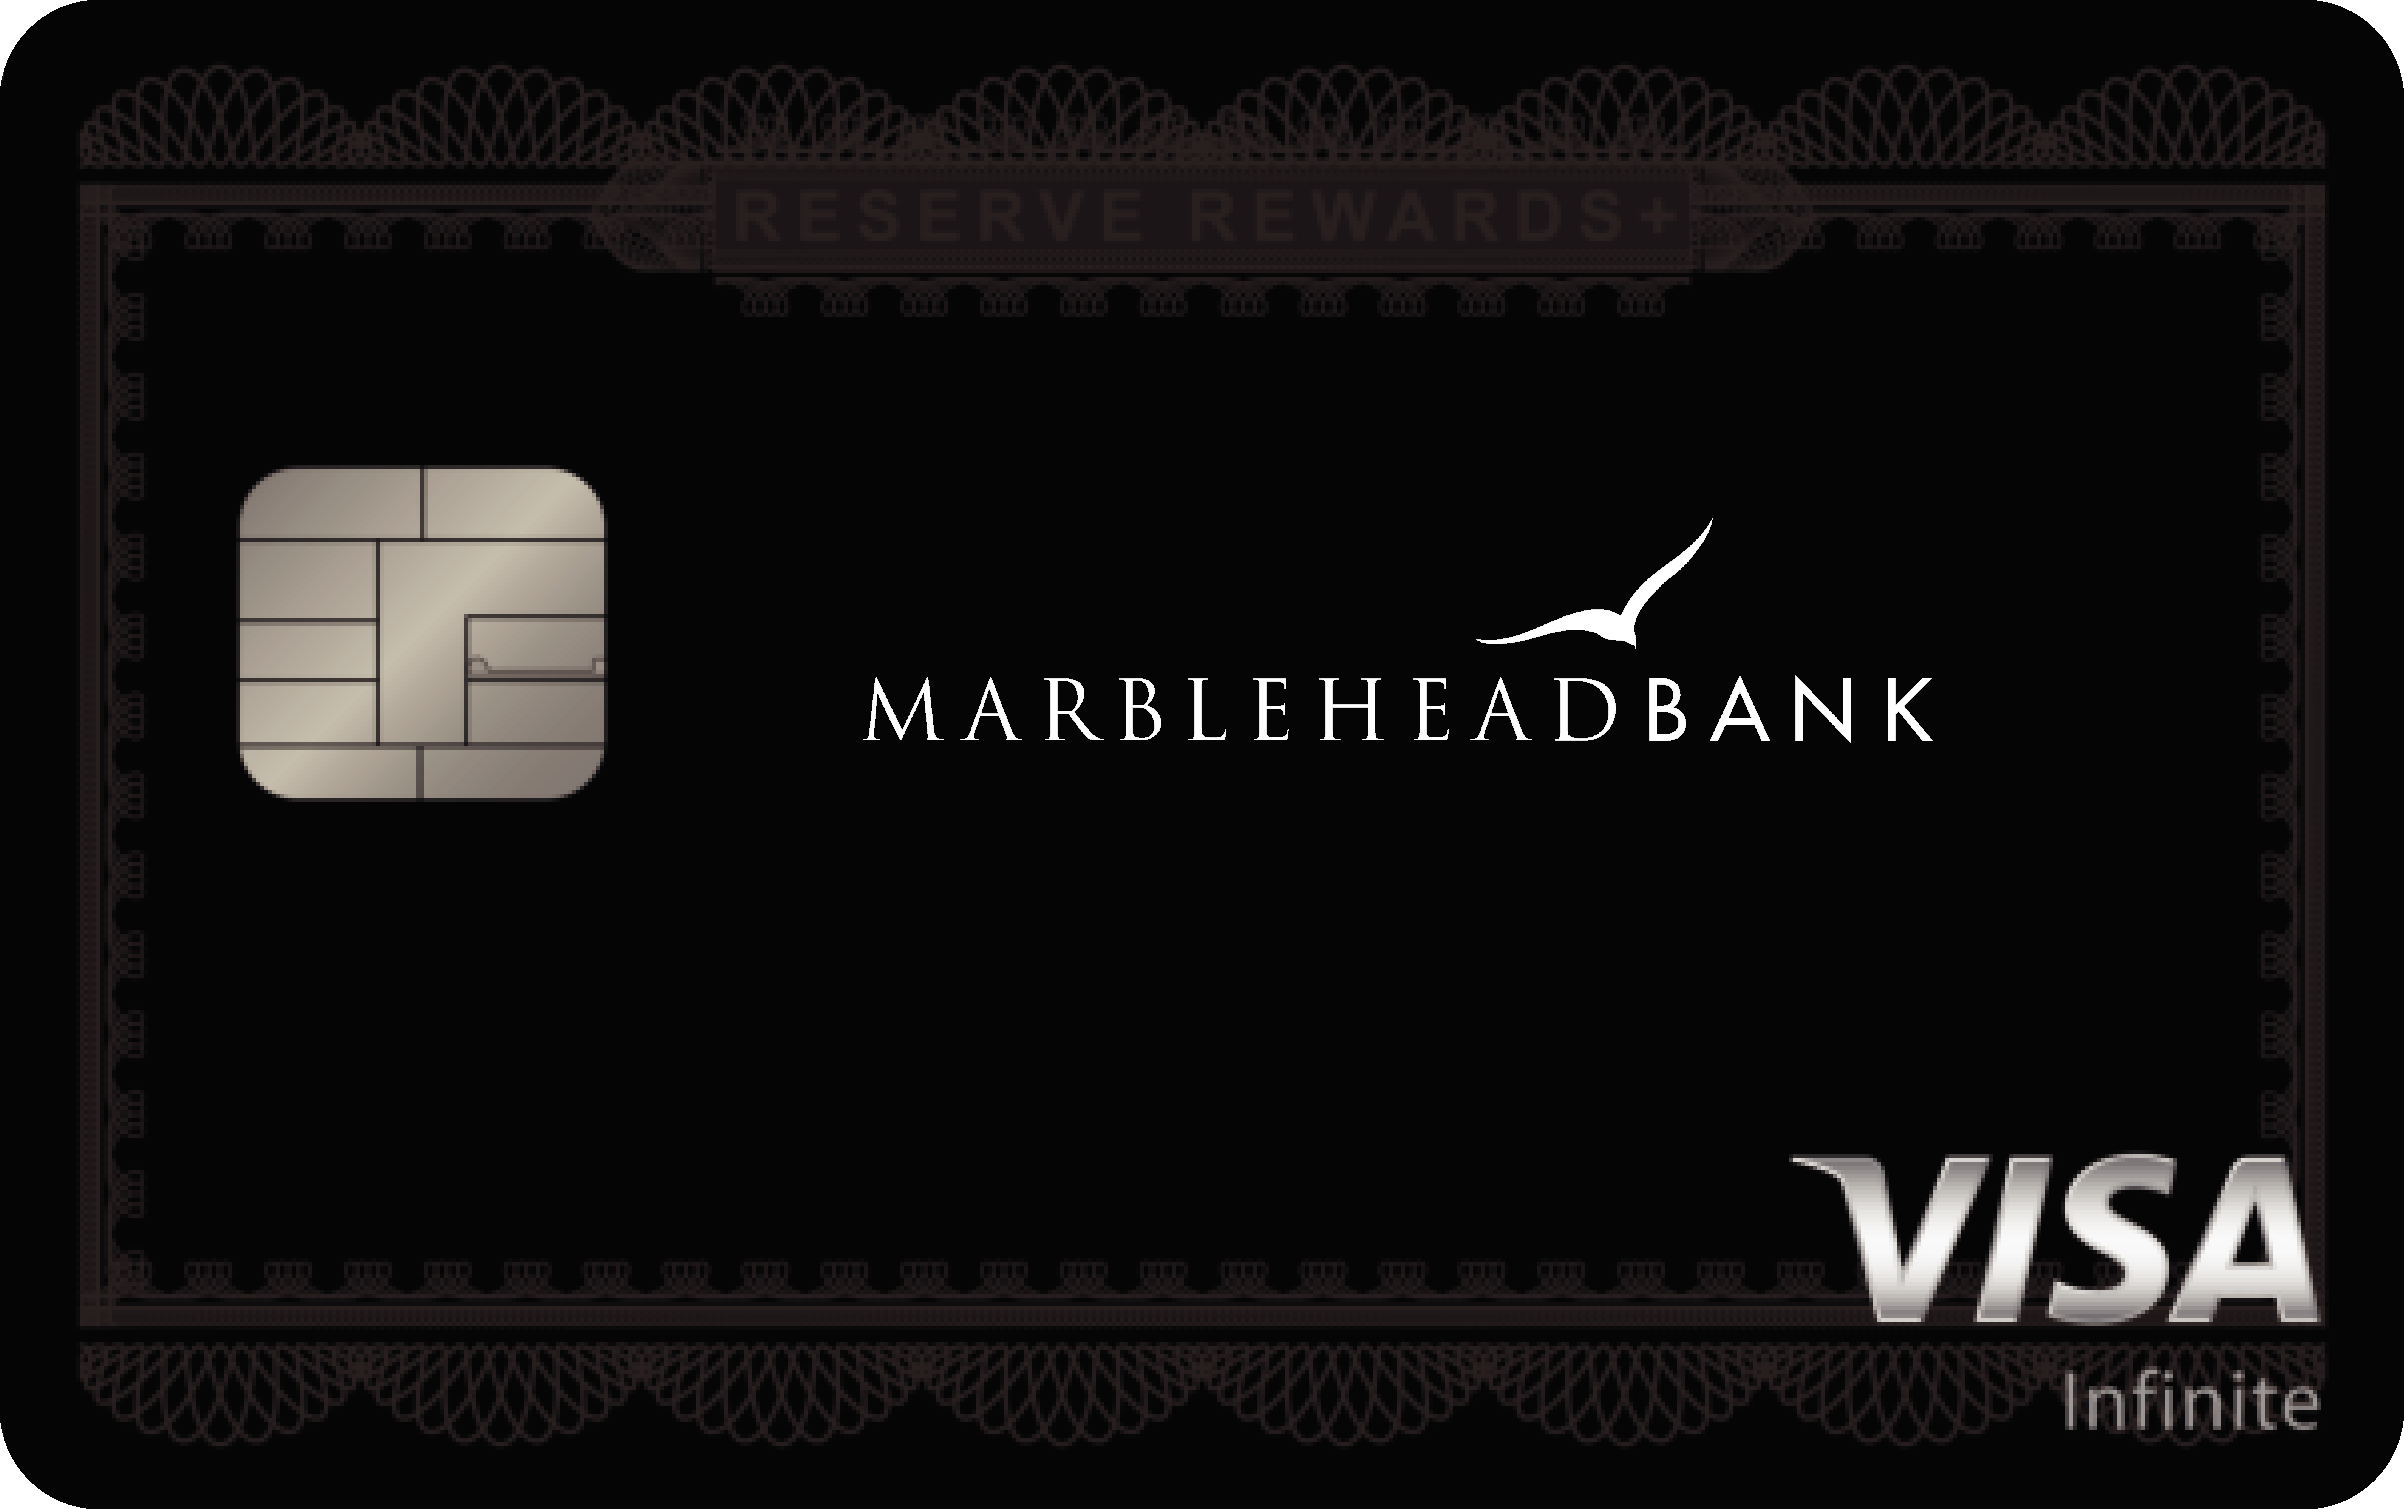 Marblehead Bank